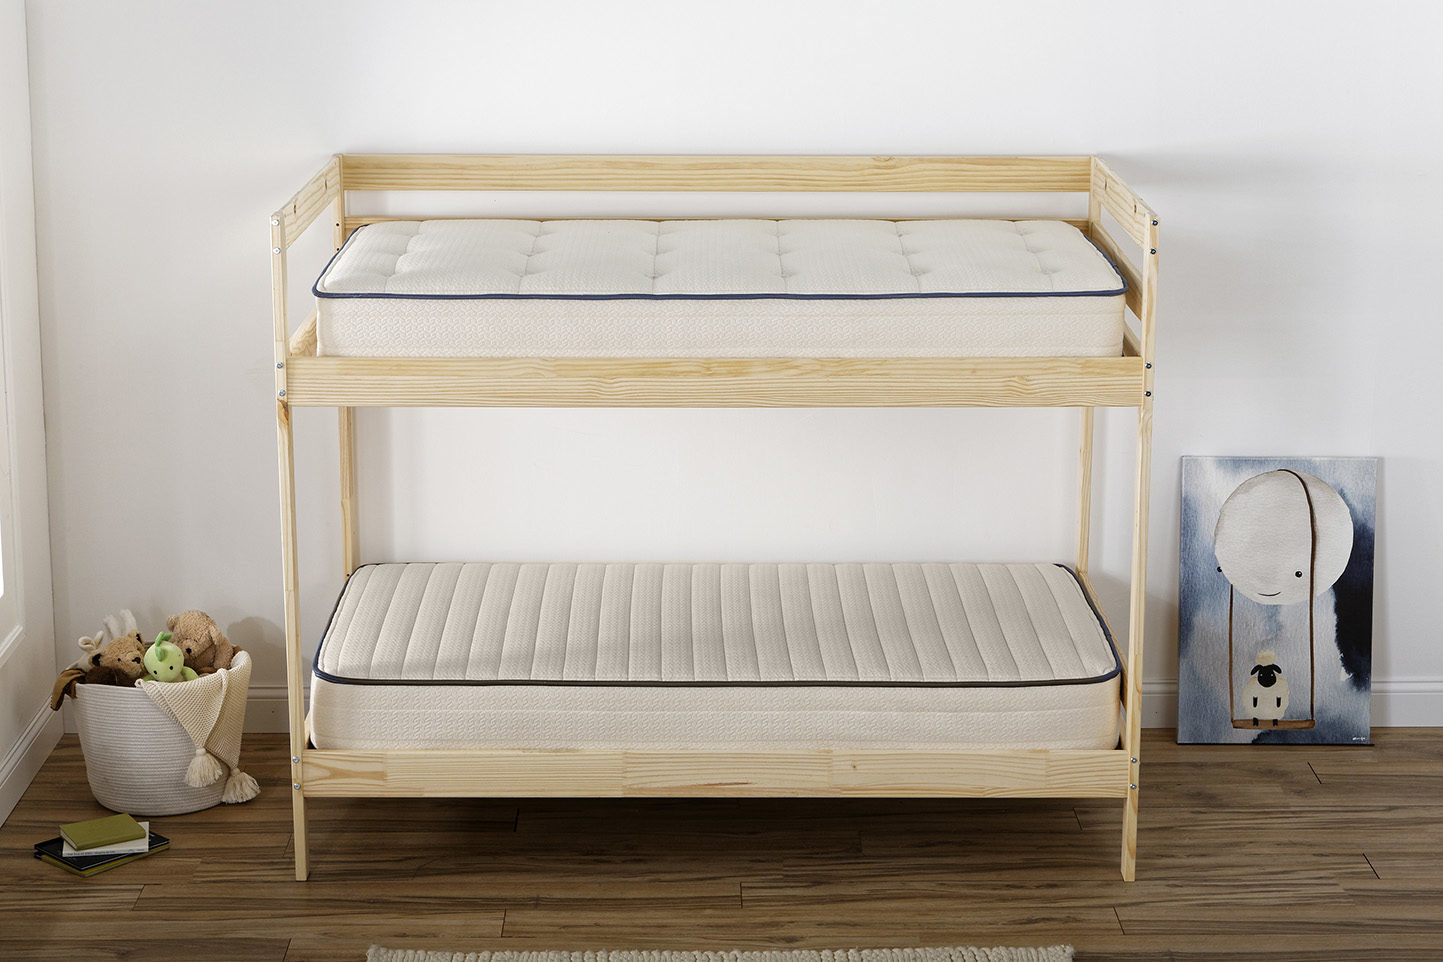 Kiwi Bunk Bed Mattresses, Eco Friendly Bunk Beds